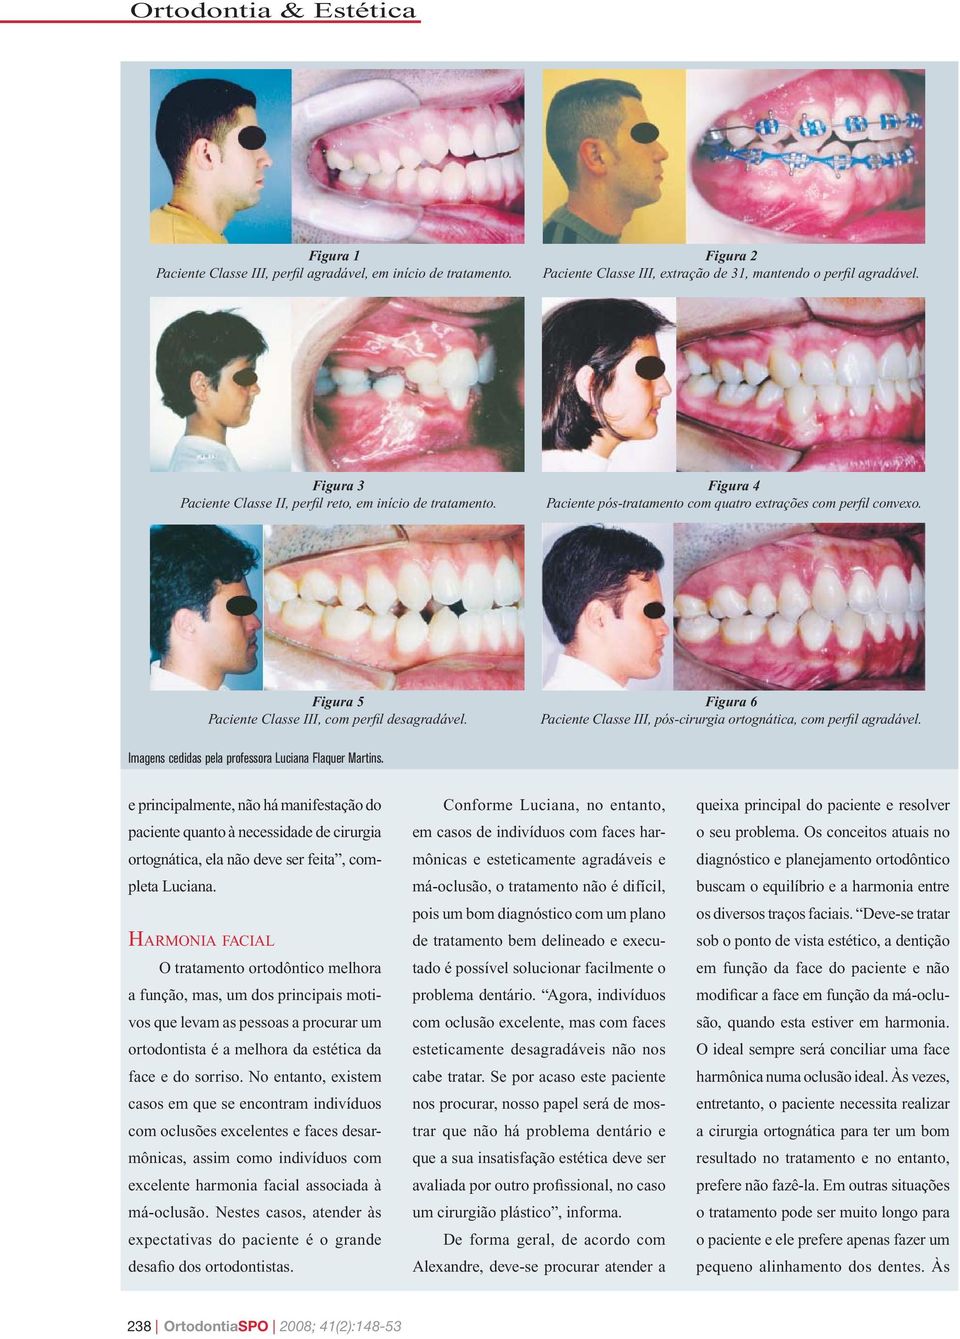 Figura 6 Paciente Classe III, pós-cirurgia ortognática, com perfil agradável. Imagens cedidas pela professora Luciana Flaquer Martins.